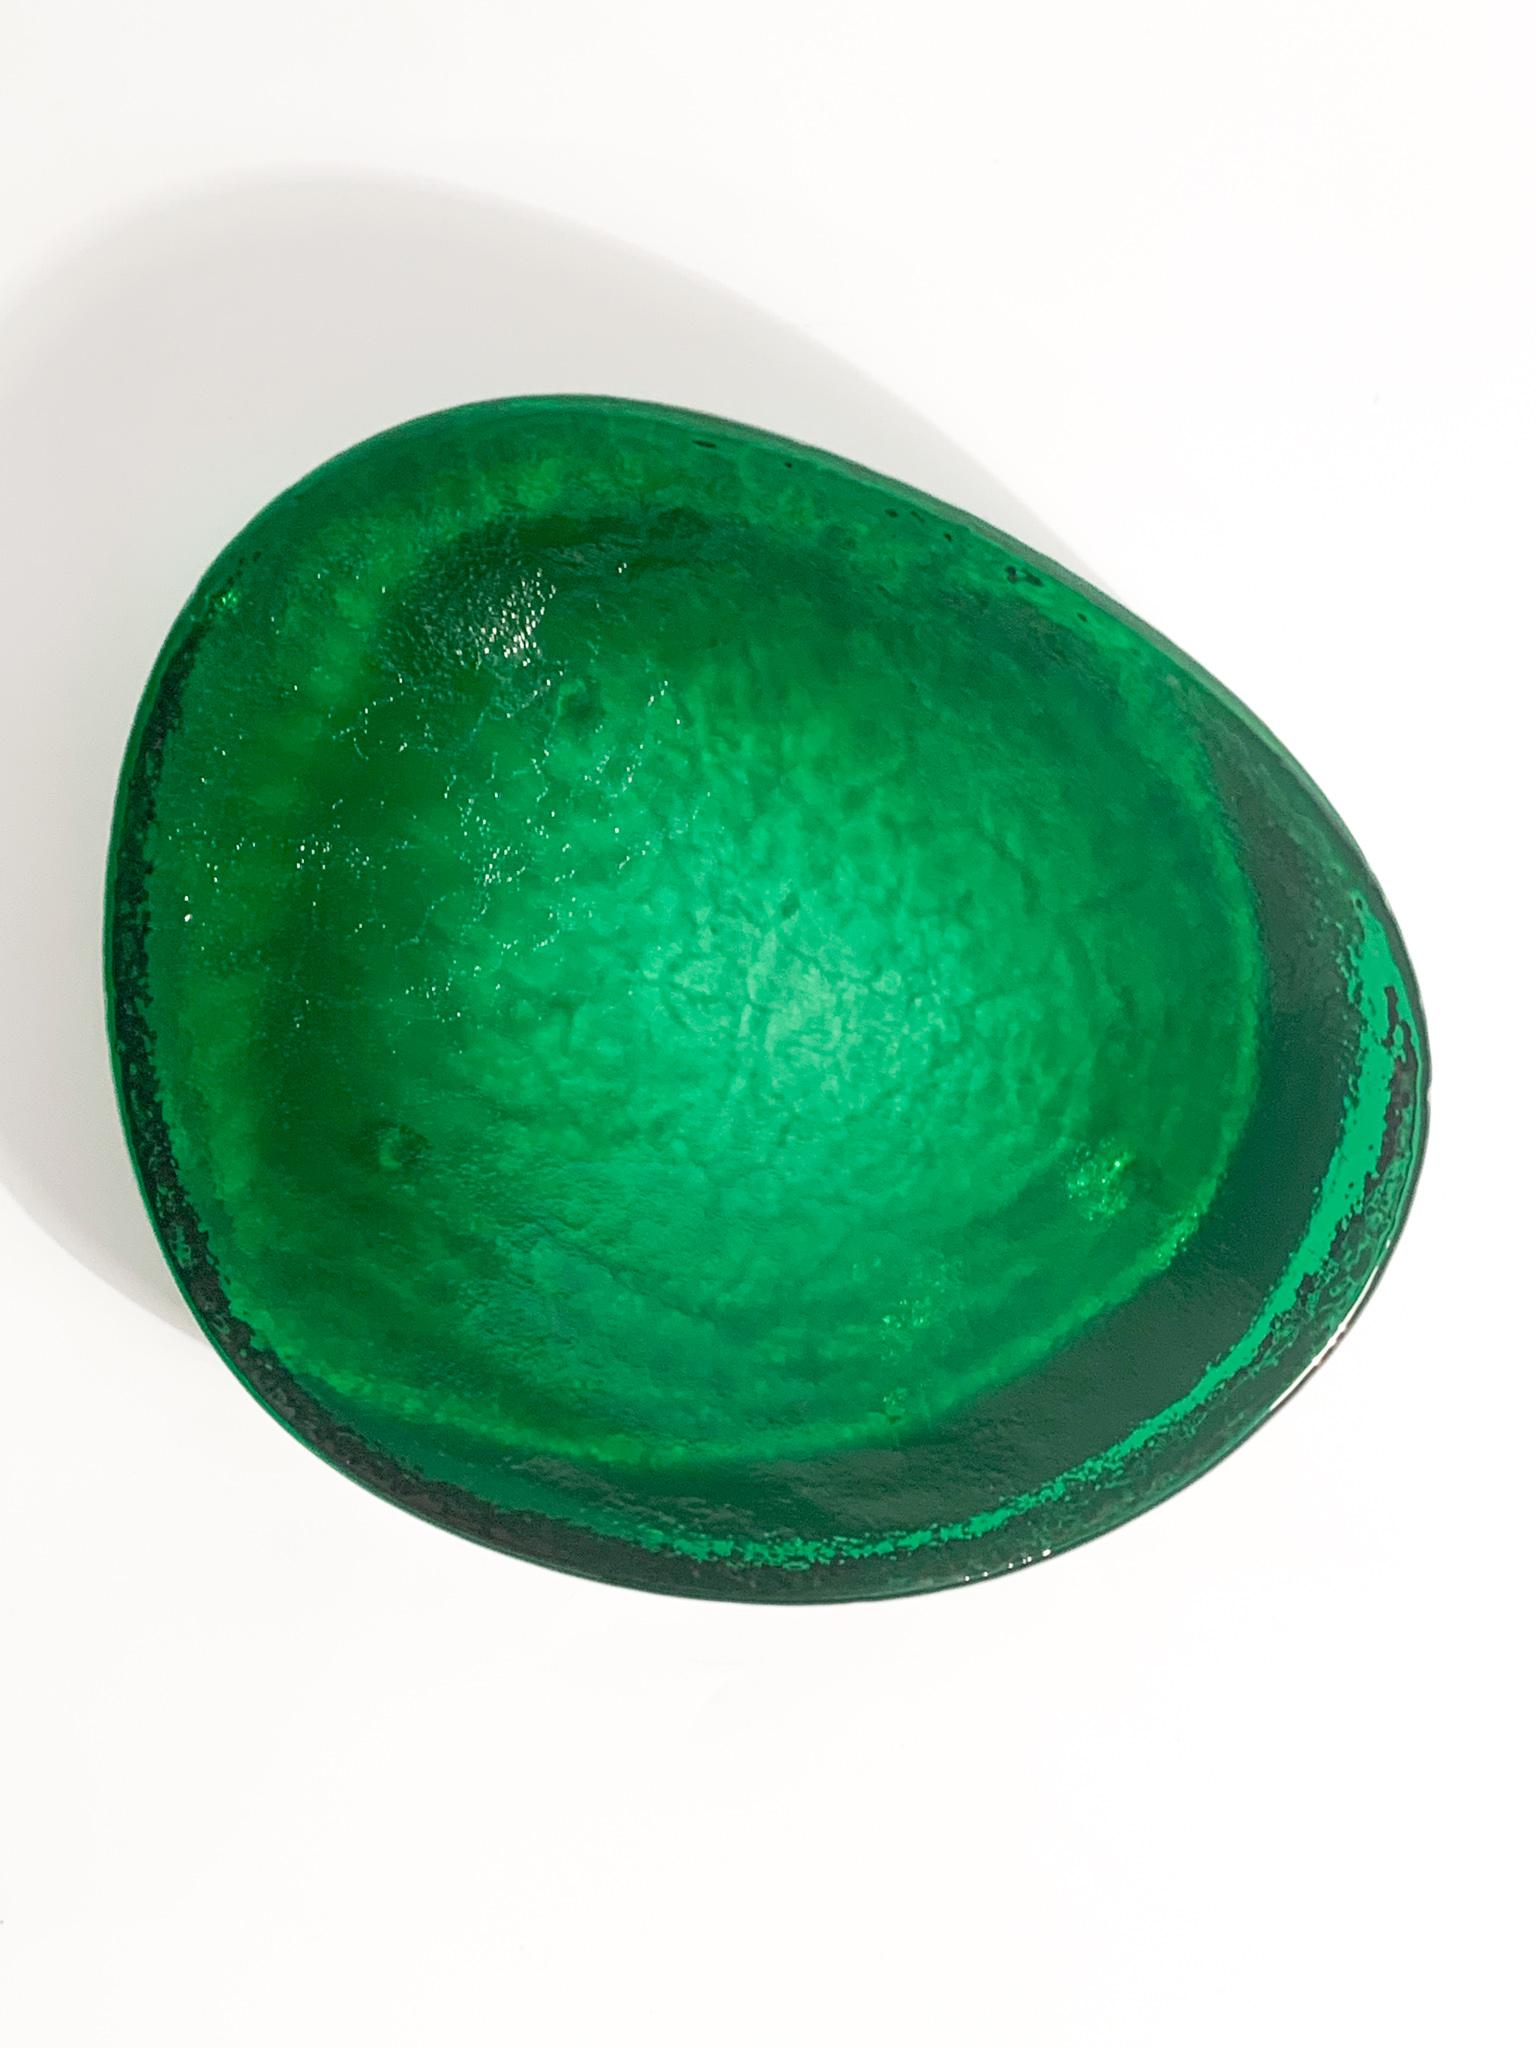 Grüne Murano-Glas-Taschenentleerungsschale, hergestellt von Nason in den 1980er Jahren

Ø cm 18 Ø cm 15 h cm 3

Carlo Nason, der 1935 in Murano geboren wurde und aus einer der ältesten Glasmacherfamilien der Insel stammt, war ein großer